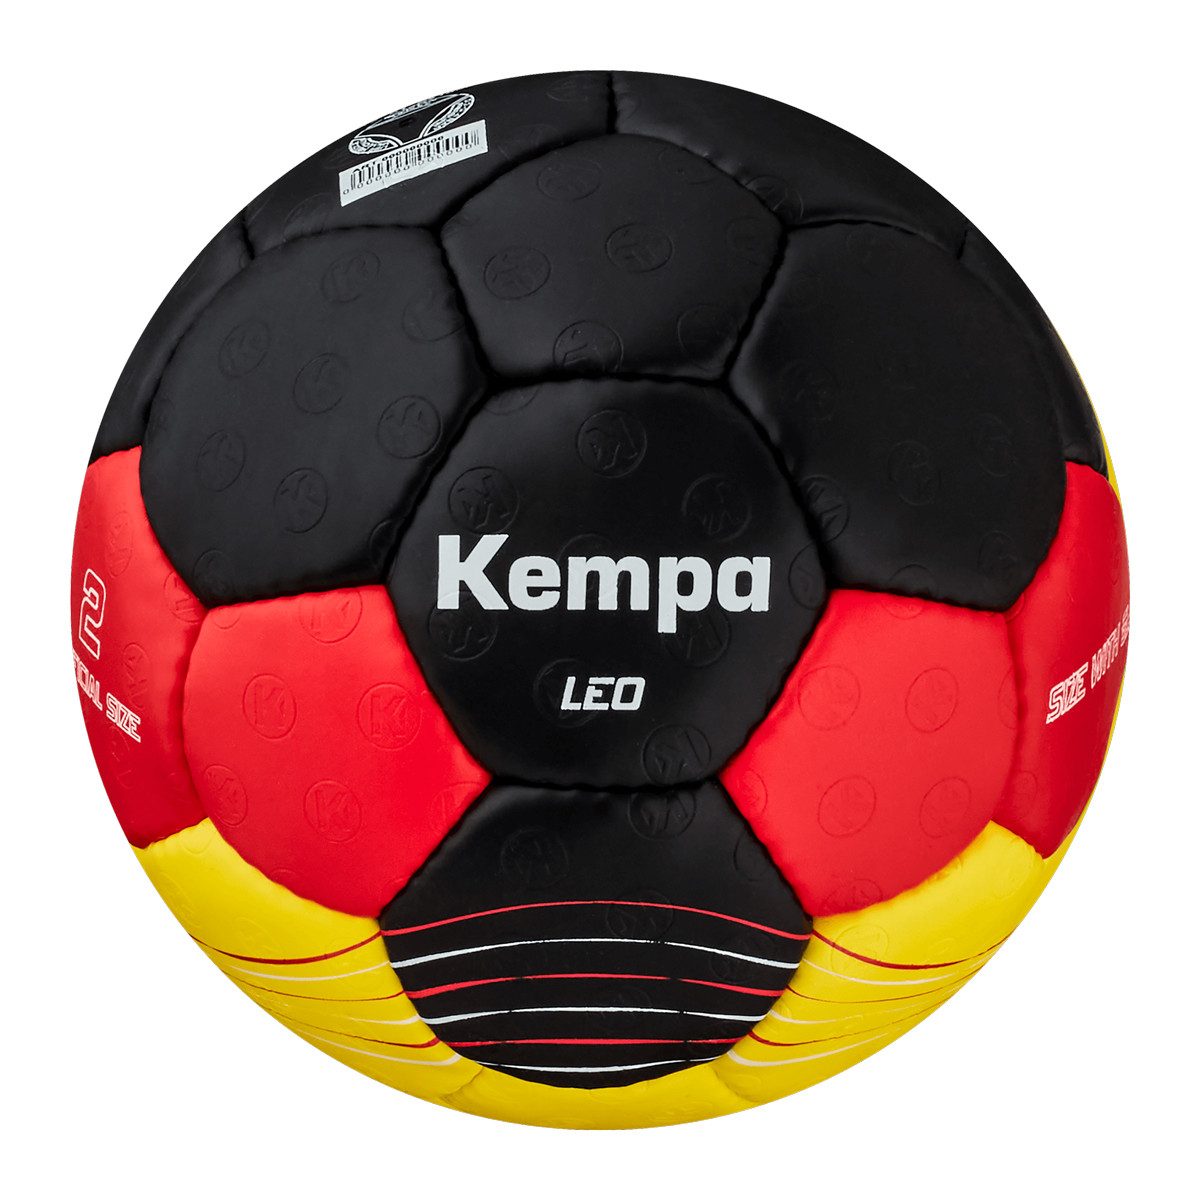 Kempa Handball Leo